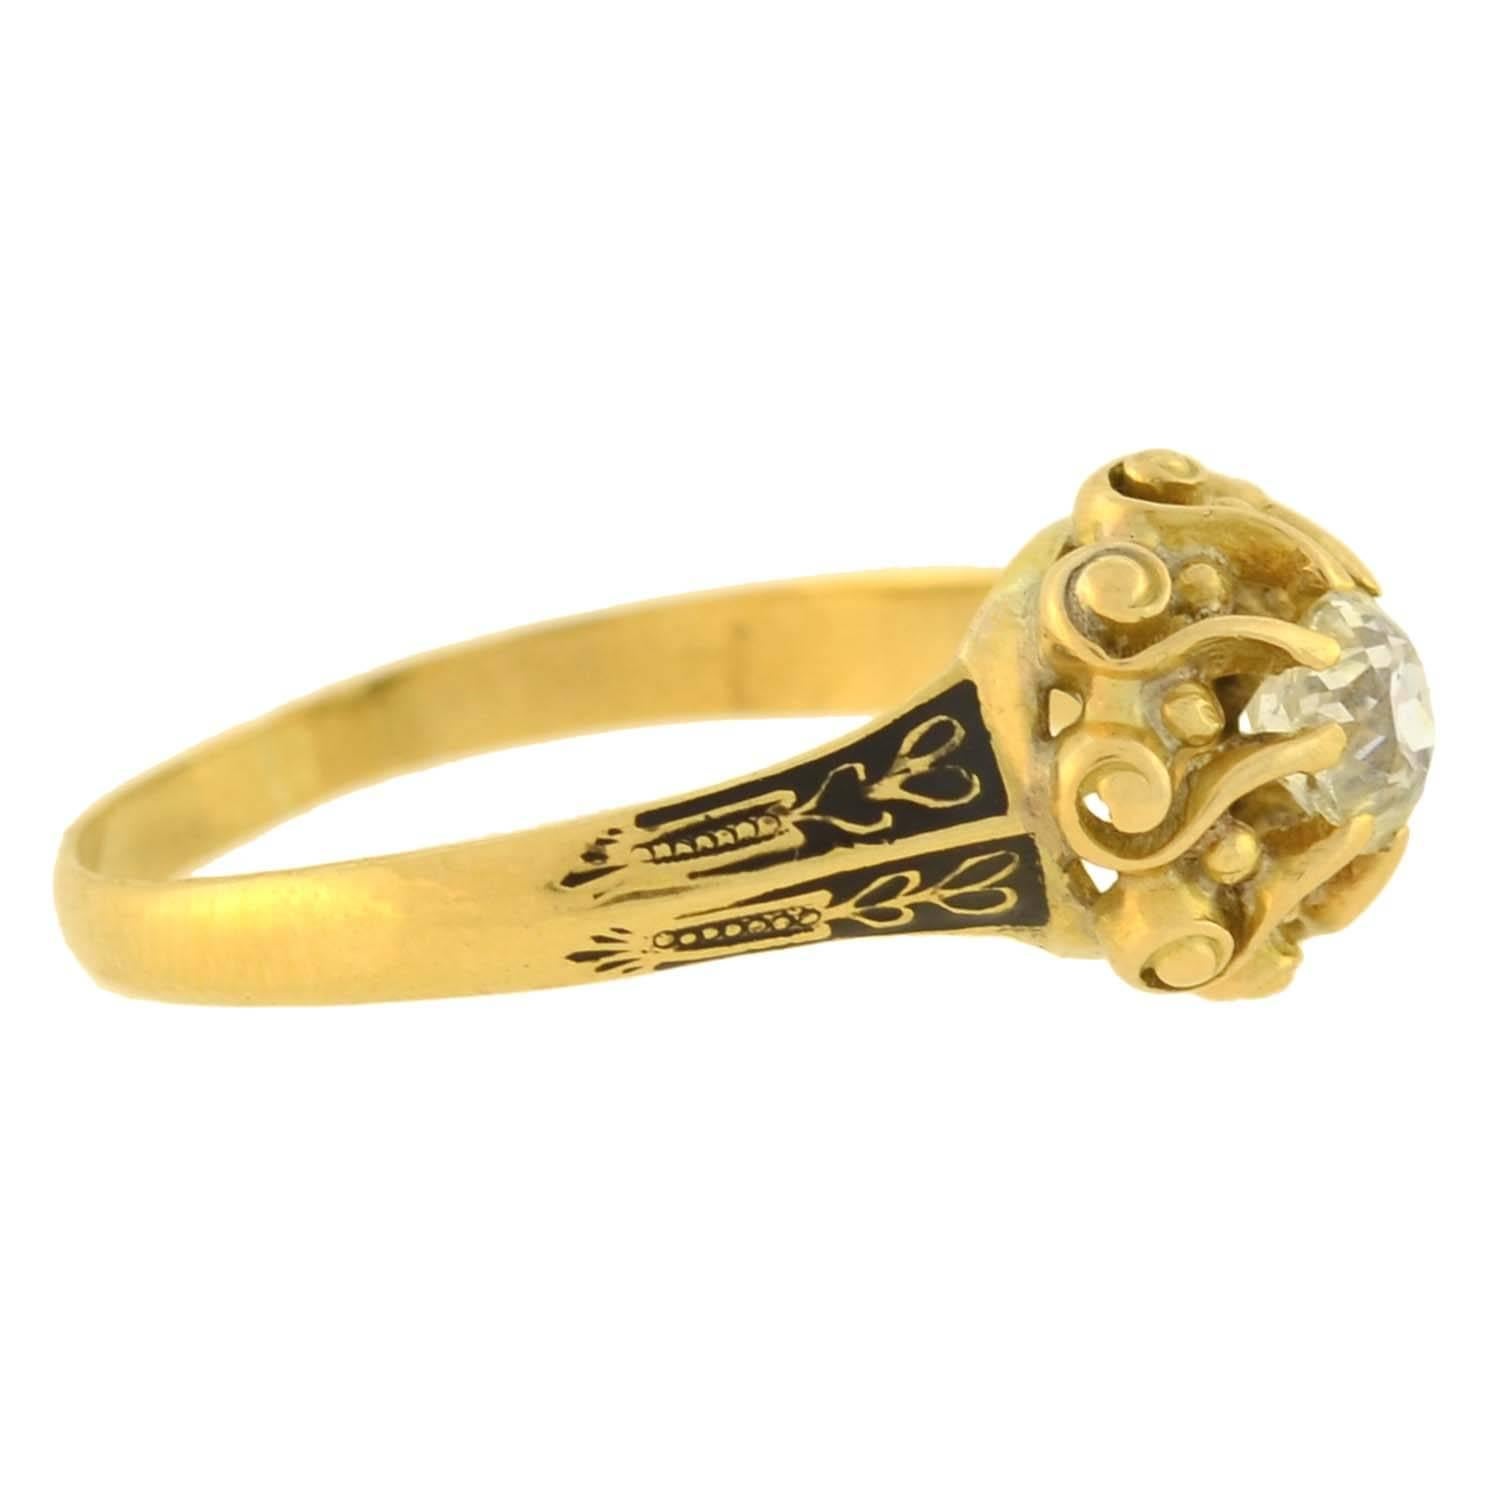 Ein exquisiter Diamantring aus der georgianischen Epoche (ca. 1830)! Diese wunderschöne 18kt Gold Ring verfügt über eine atemberaubende Kissen Mine Cut Diamant in der Mitte, die etwa 0,60ct mit geschätzten K Farbe und SI2 Klarheit wiegt. Der Diamant